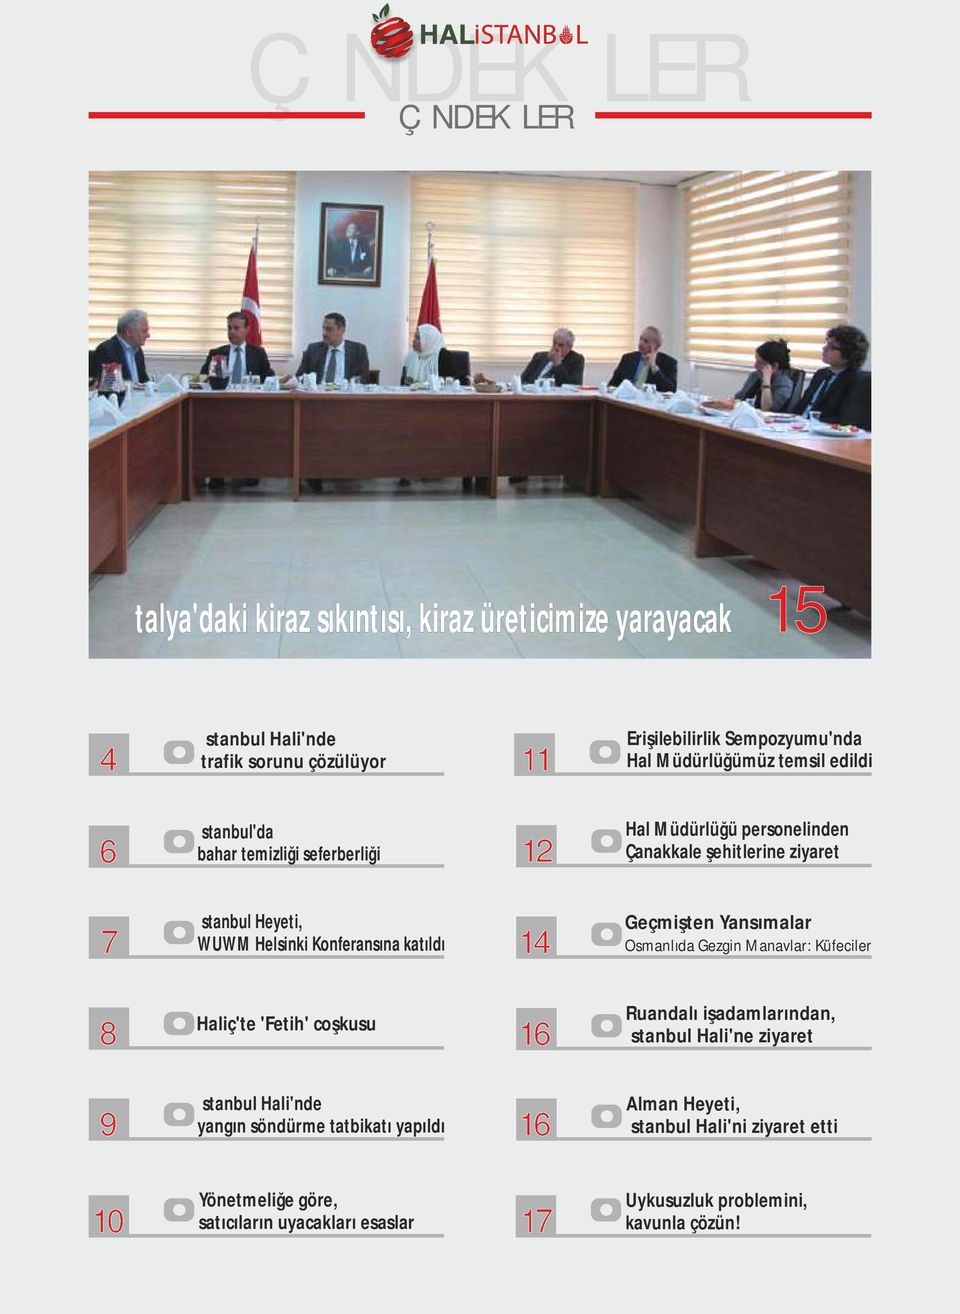 Konferansına katıldı 14 Geçmişten Yansımalar Osmanlıda Gezgin Manavlar: Küfeciler 8 Haliç'te 'Fetih' coşkusu 16 Ruandalı işadamlarından, İstanbul Hali'ne ziyaret 9